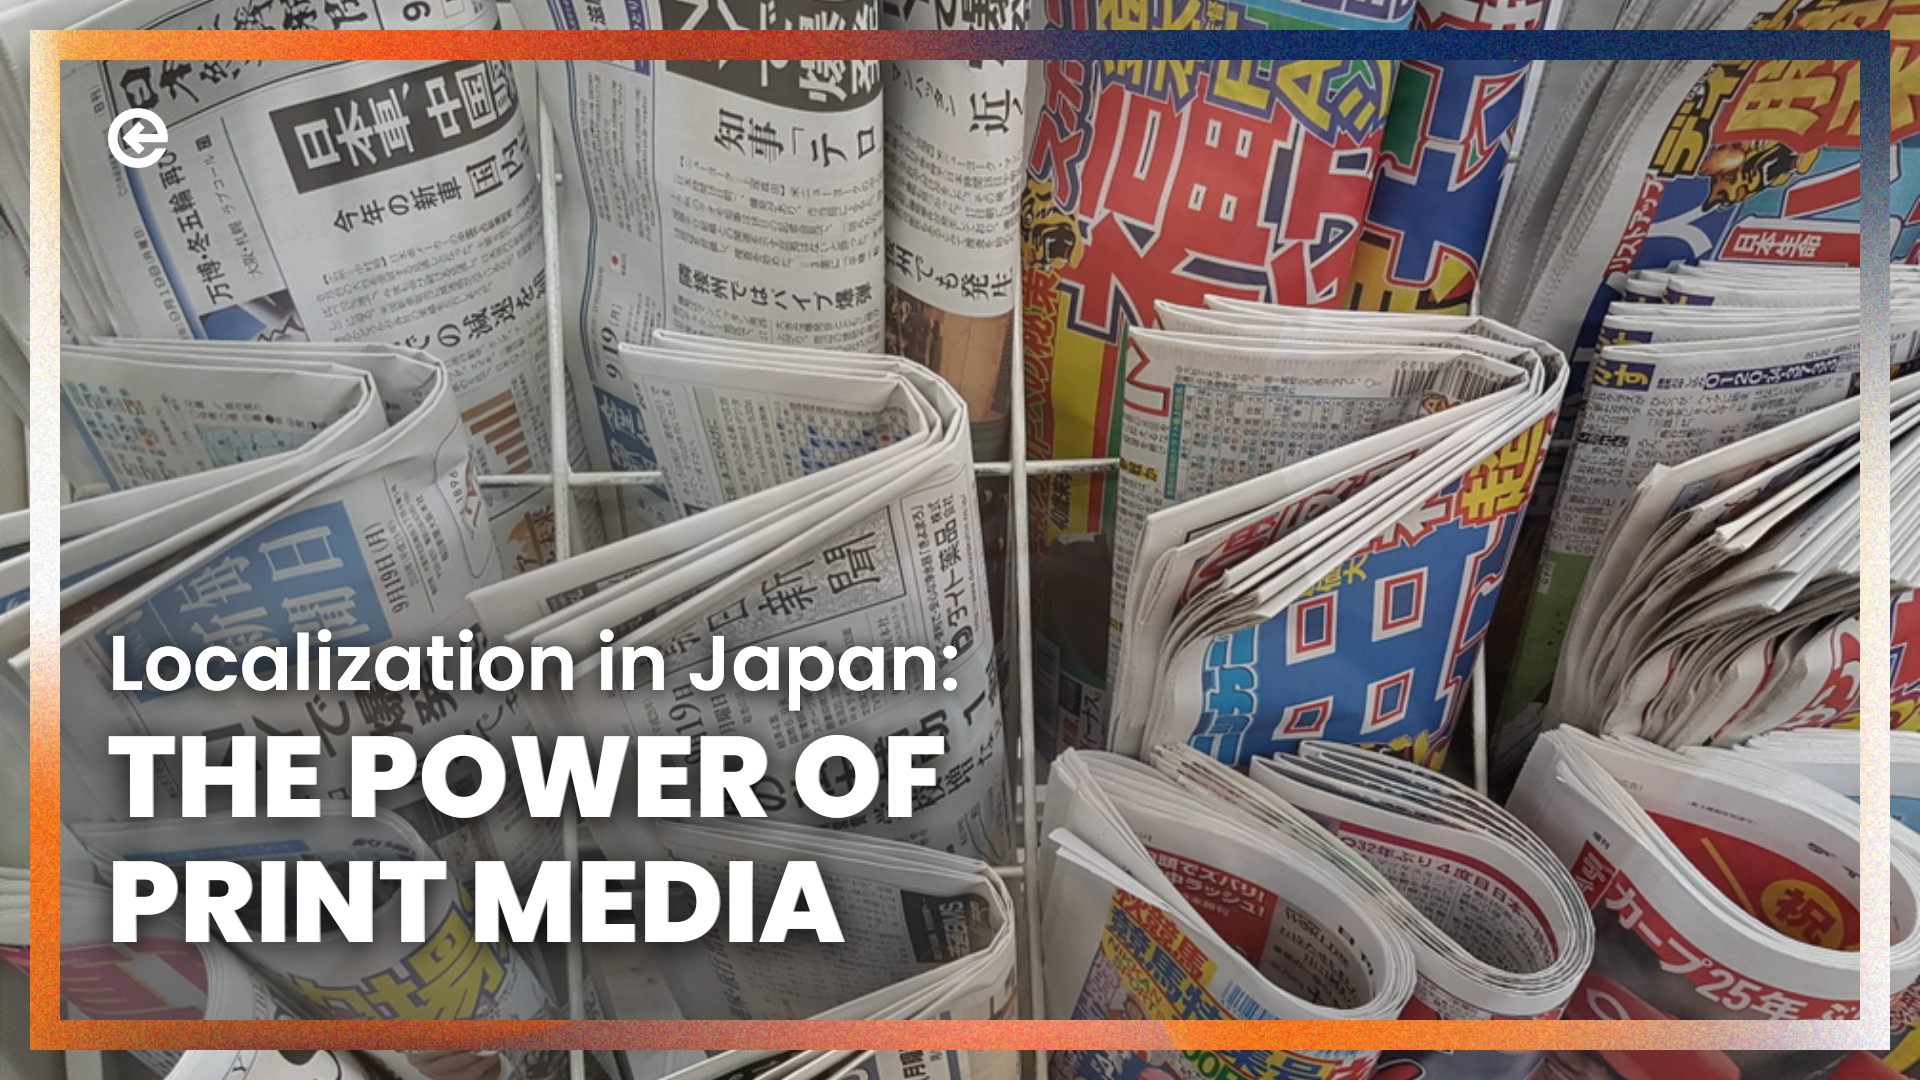 जापान में प्रिंट मीडिया मार्केटिंग कालातीत क्यों है?